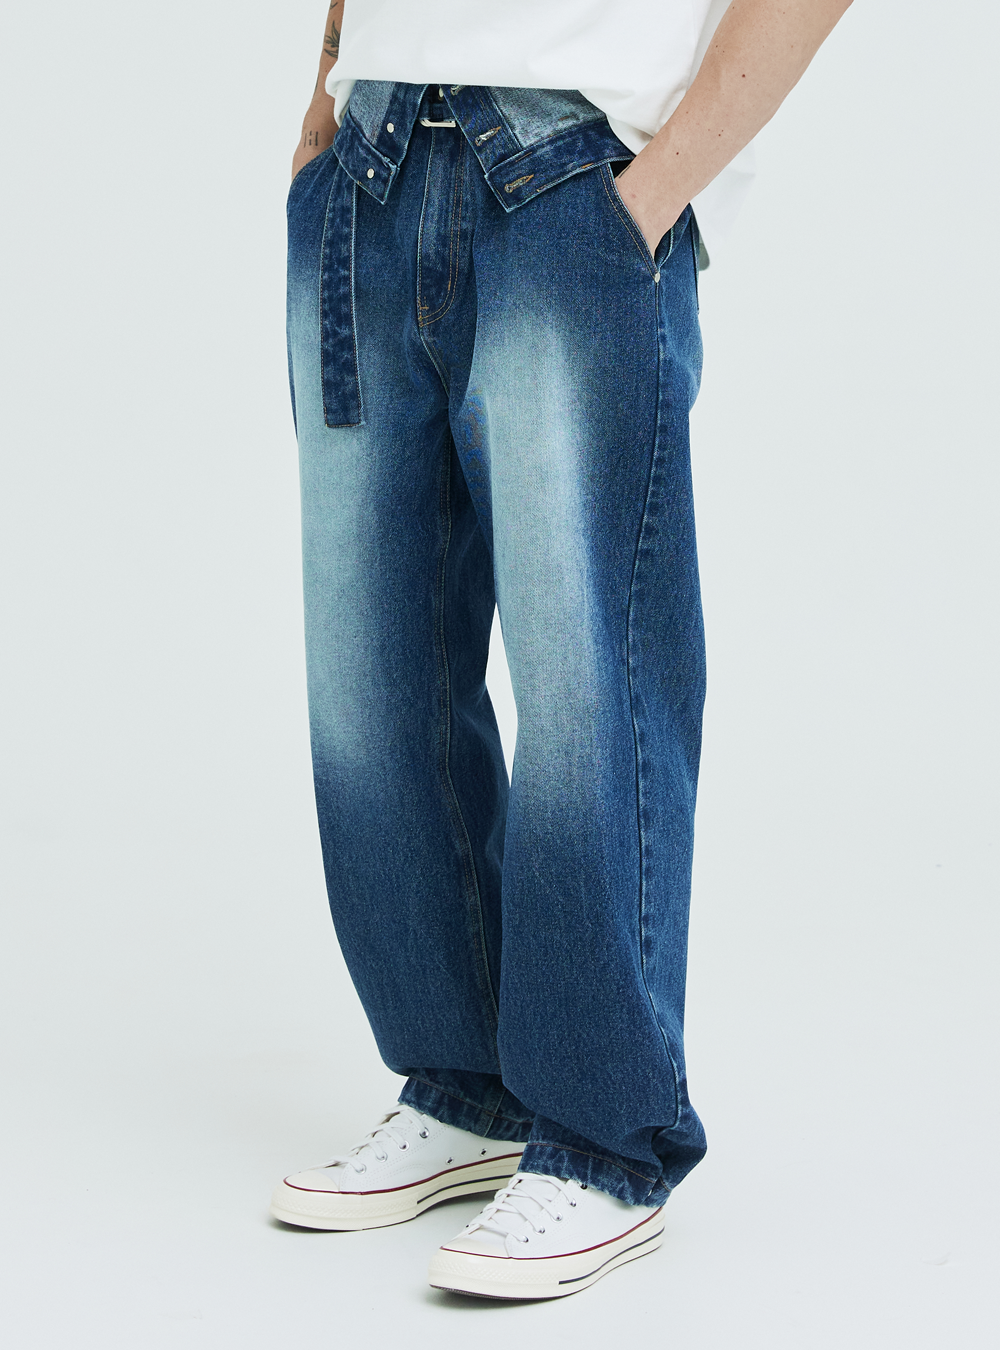 와이드 벨티드 디테쳐블 더블진  Wide belted detachable double jeans (indigo blue)